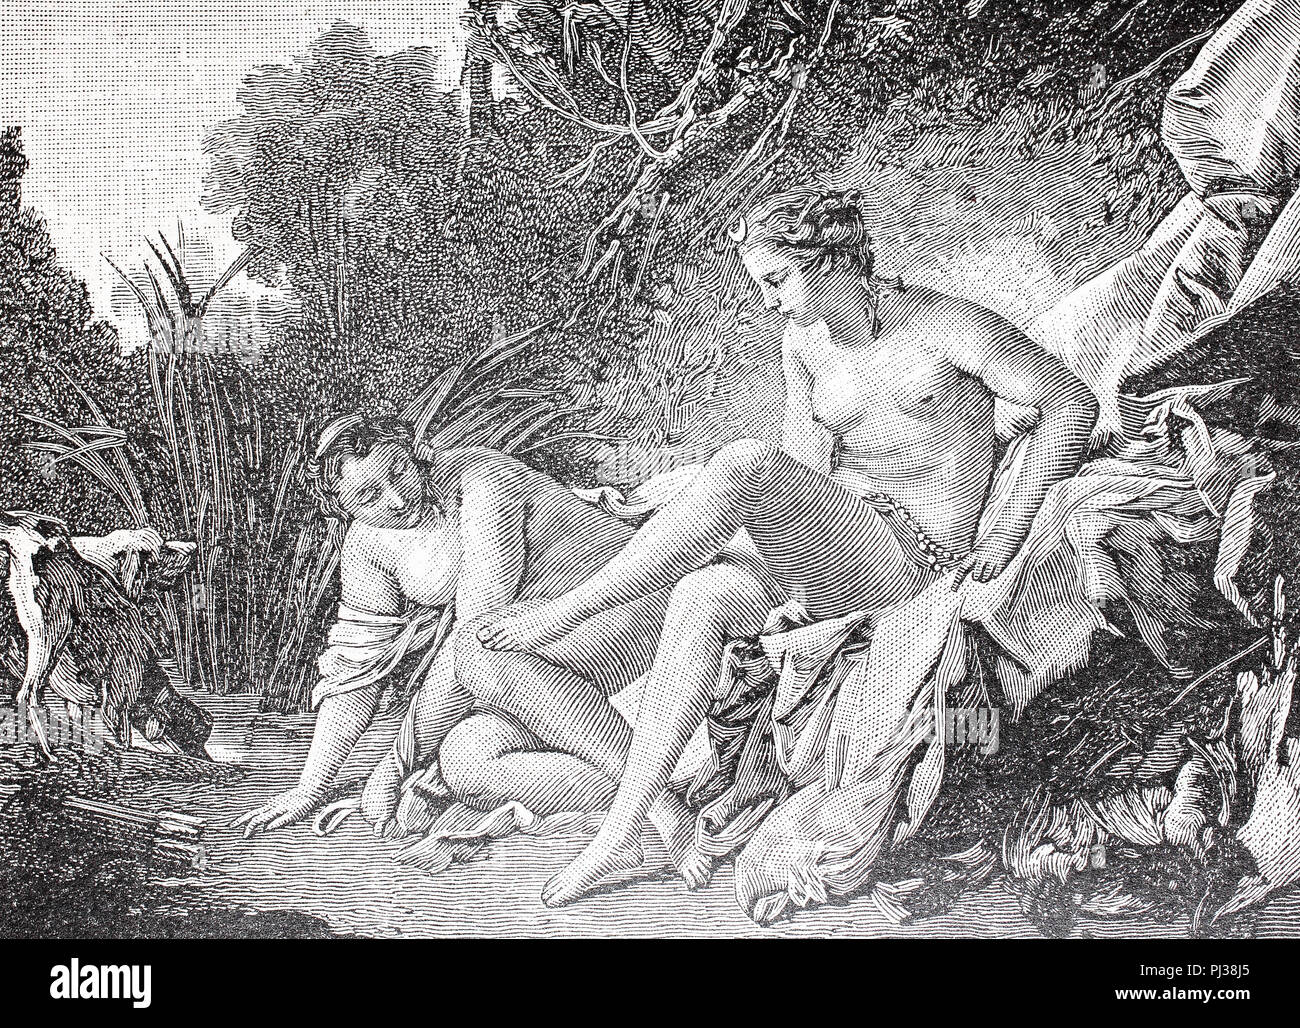 Diana, la diosa de la caza, de la luna, y la naturaleza en la mitología romana después de su baño, mejor reproducción digital de un original desde el año 1895 Foto de stock